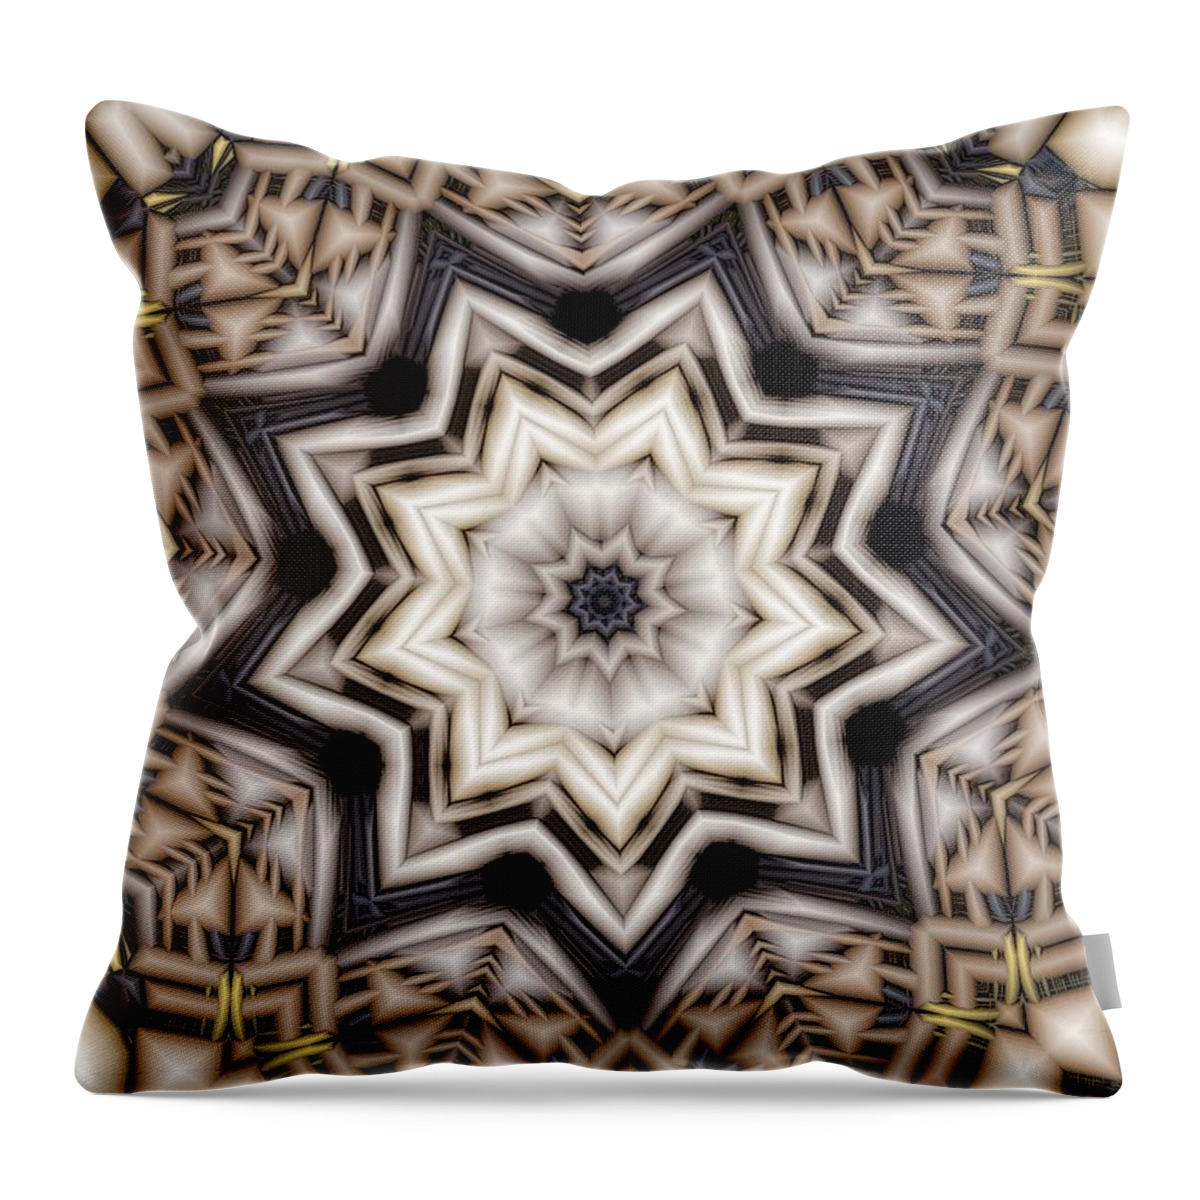 Kaleidoscope Throw Pillow featuring the digital art Kaleidoscope 110 by Ronald Bissett